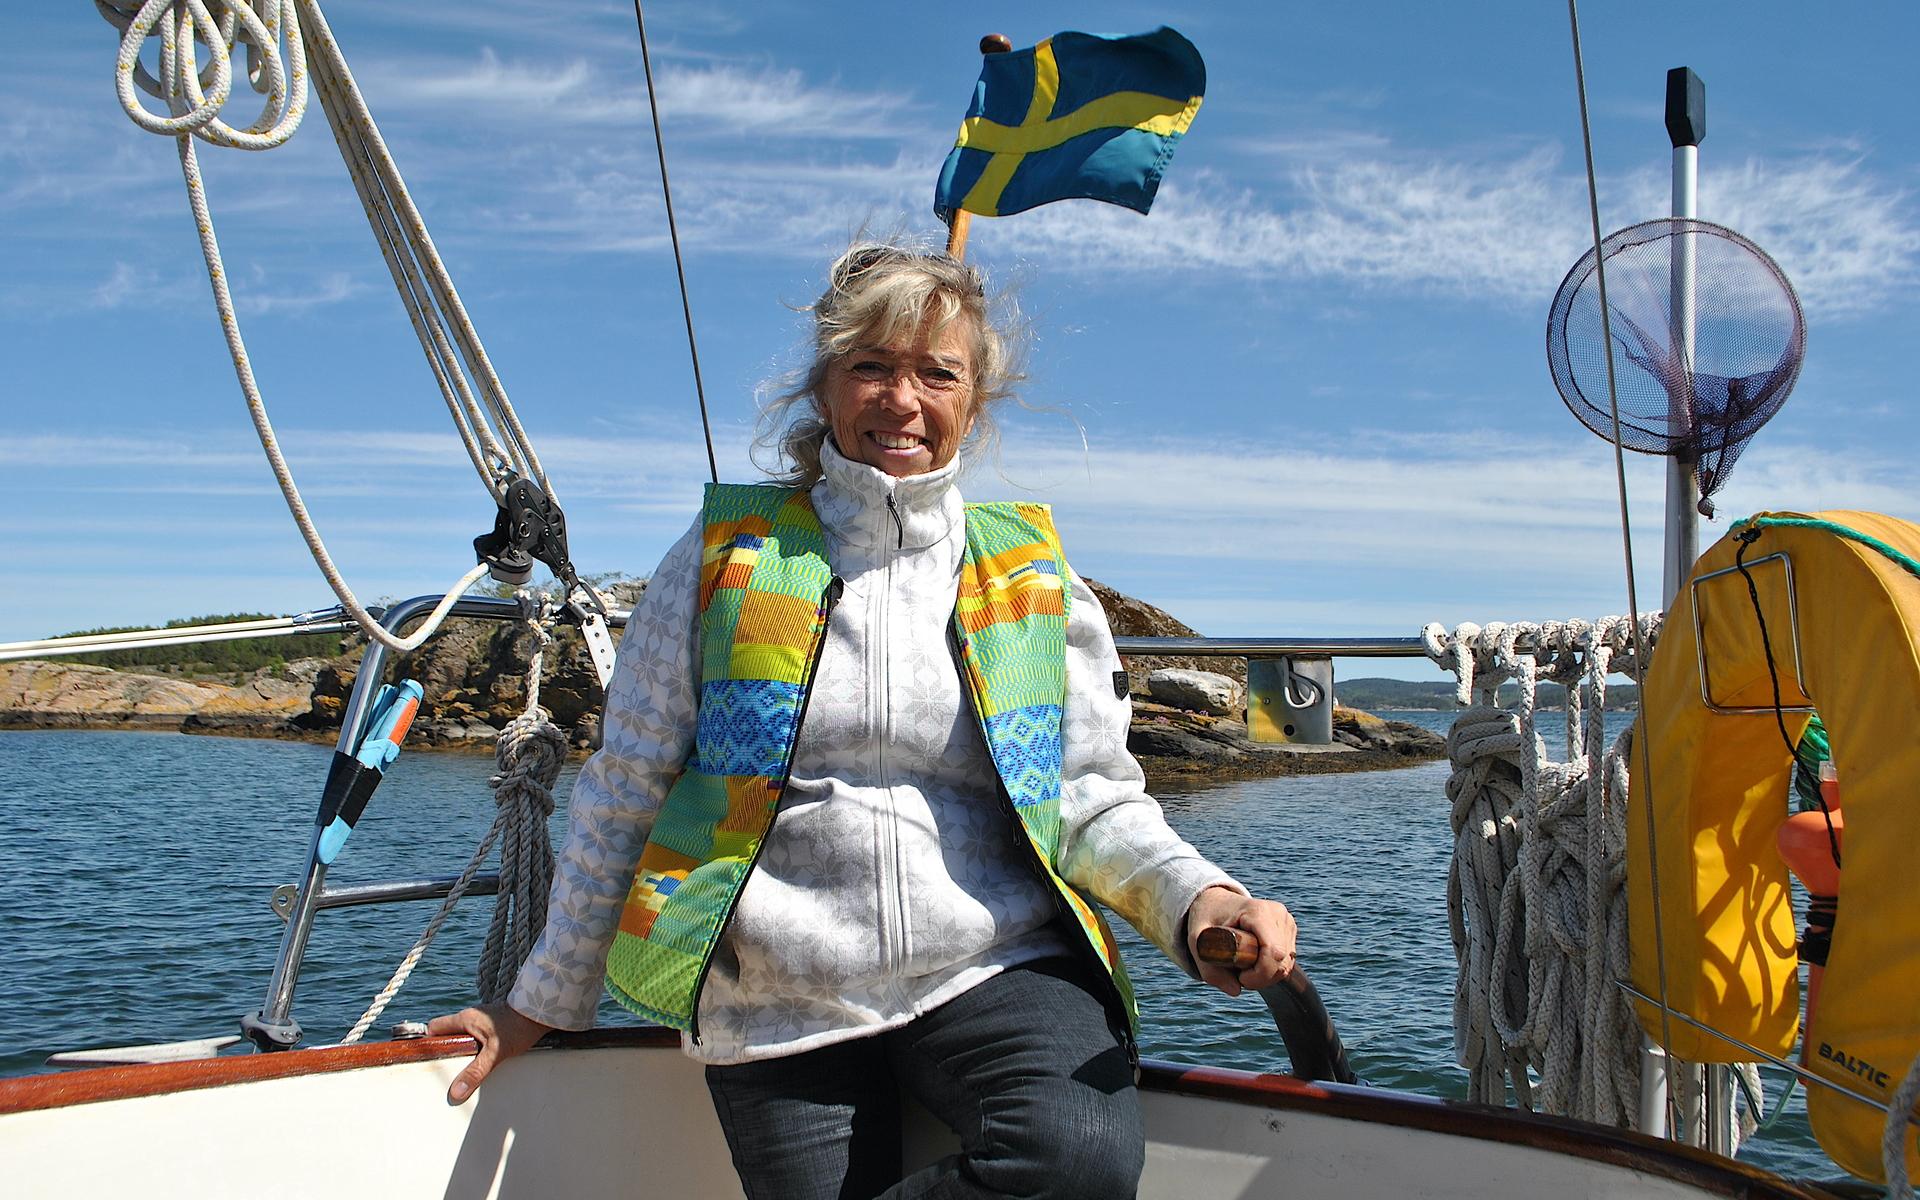 Med Anette som skeppare får du en heldag med segling, upplevelser på Lilla Brattön, After beach med drink och reggaemusik. Vill du kan du dörja makrill på vägen hem.